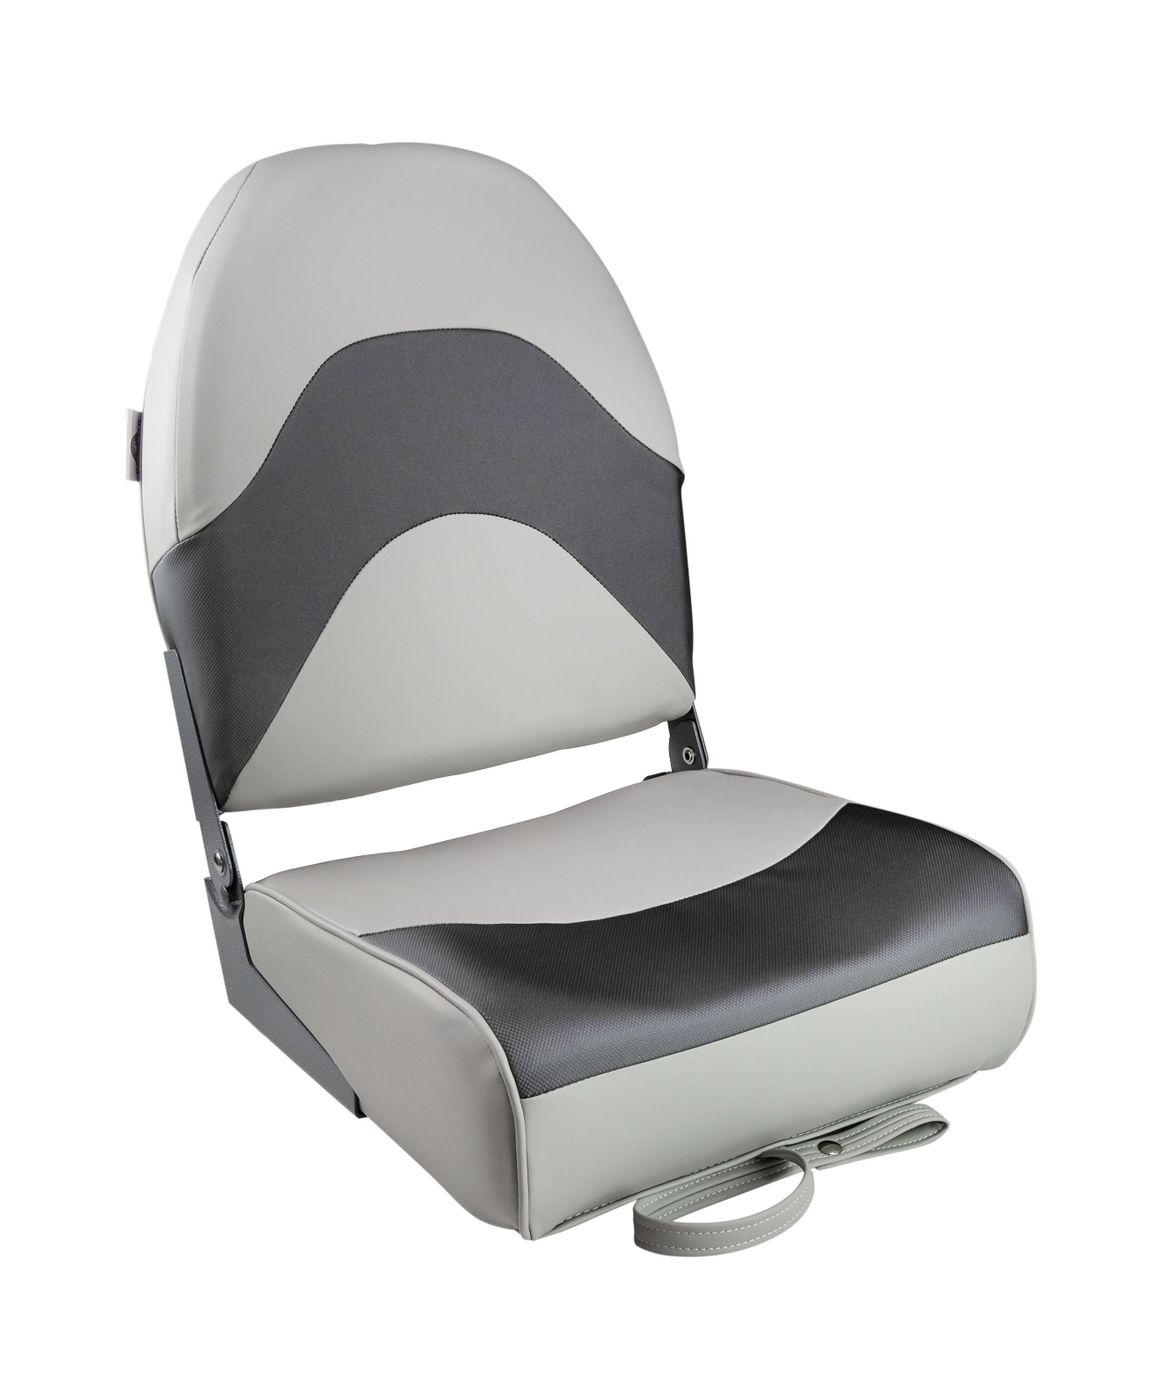 Кресло складное мягкое PREMIUM WAVE, цвет серый/черный 1062034 кресло складное мягкое traveler белый серый 1061104c